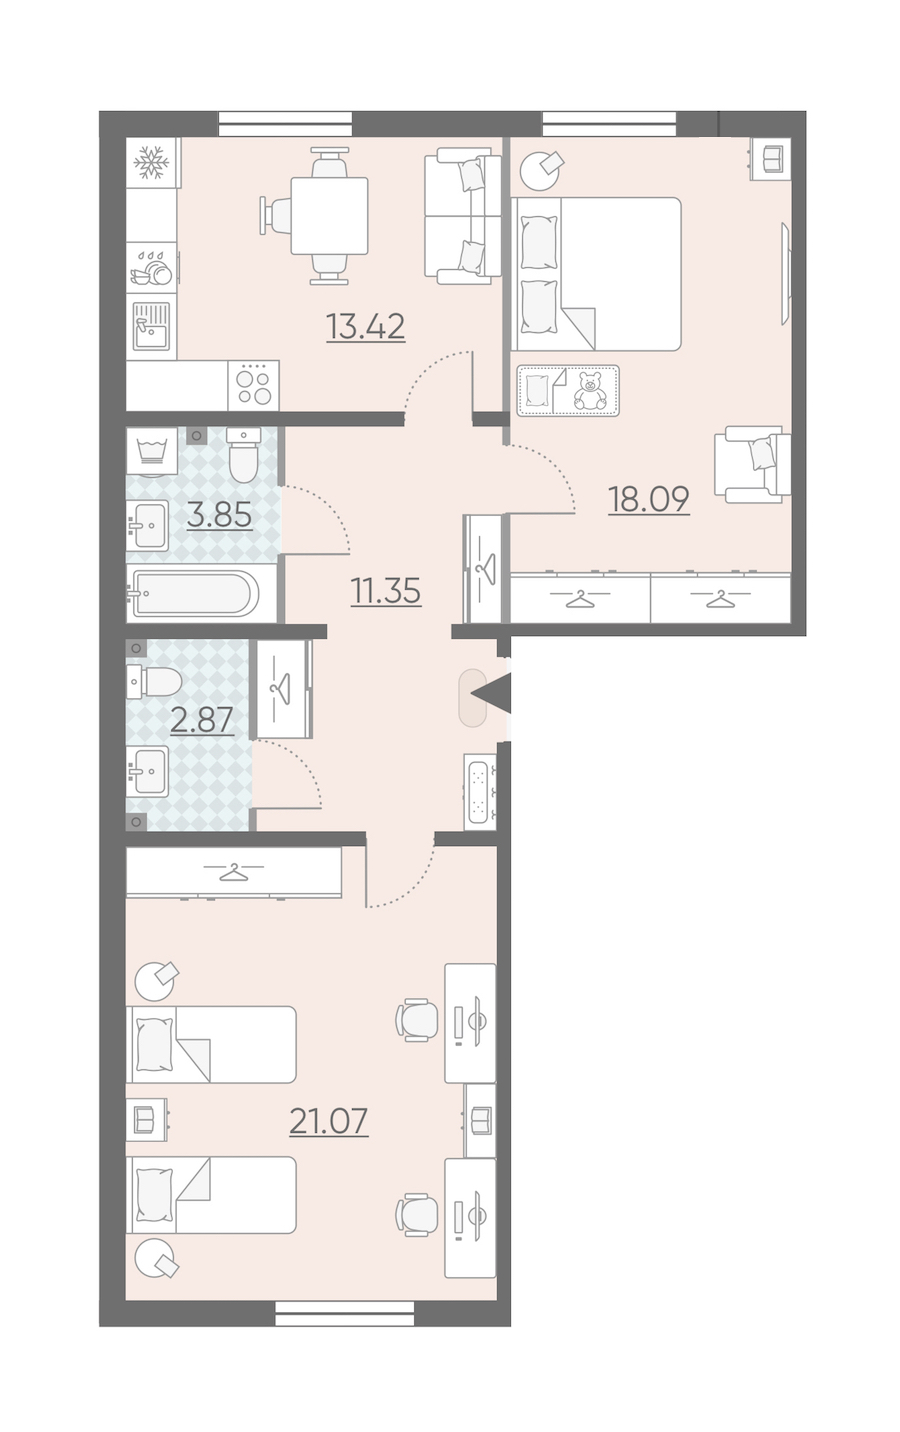 Двухкомнатная квартира в : площадь 70.65 м2 , этаж: 2 – купить в Санкт-Петербурге